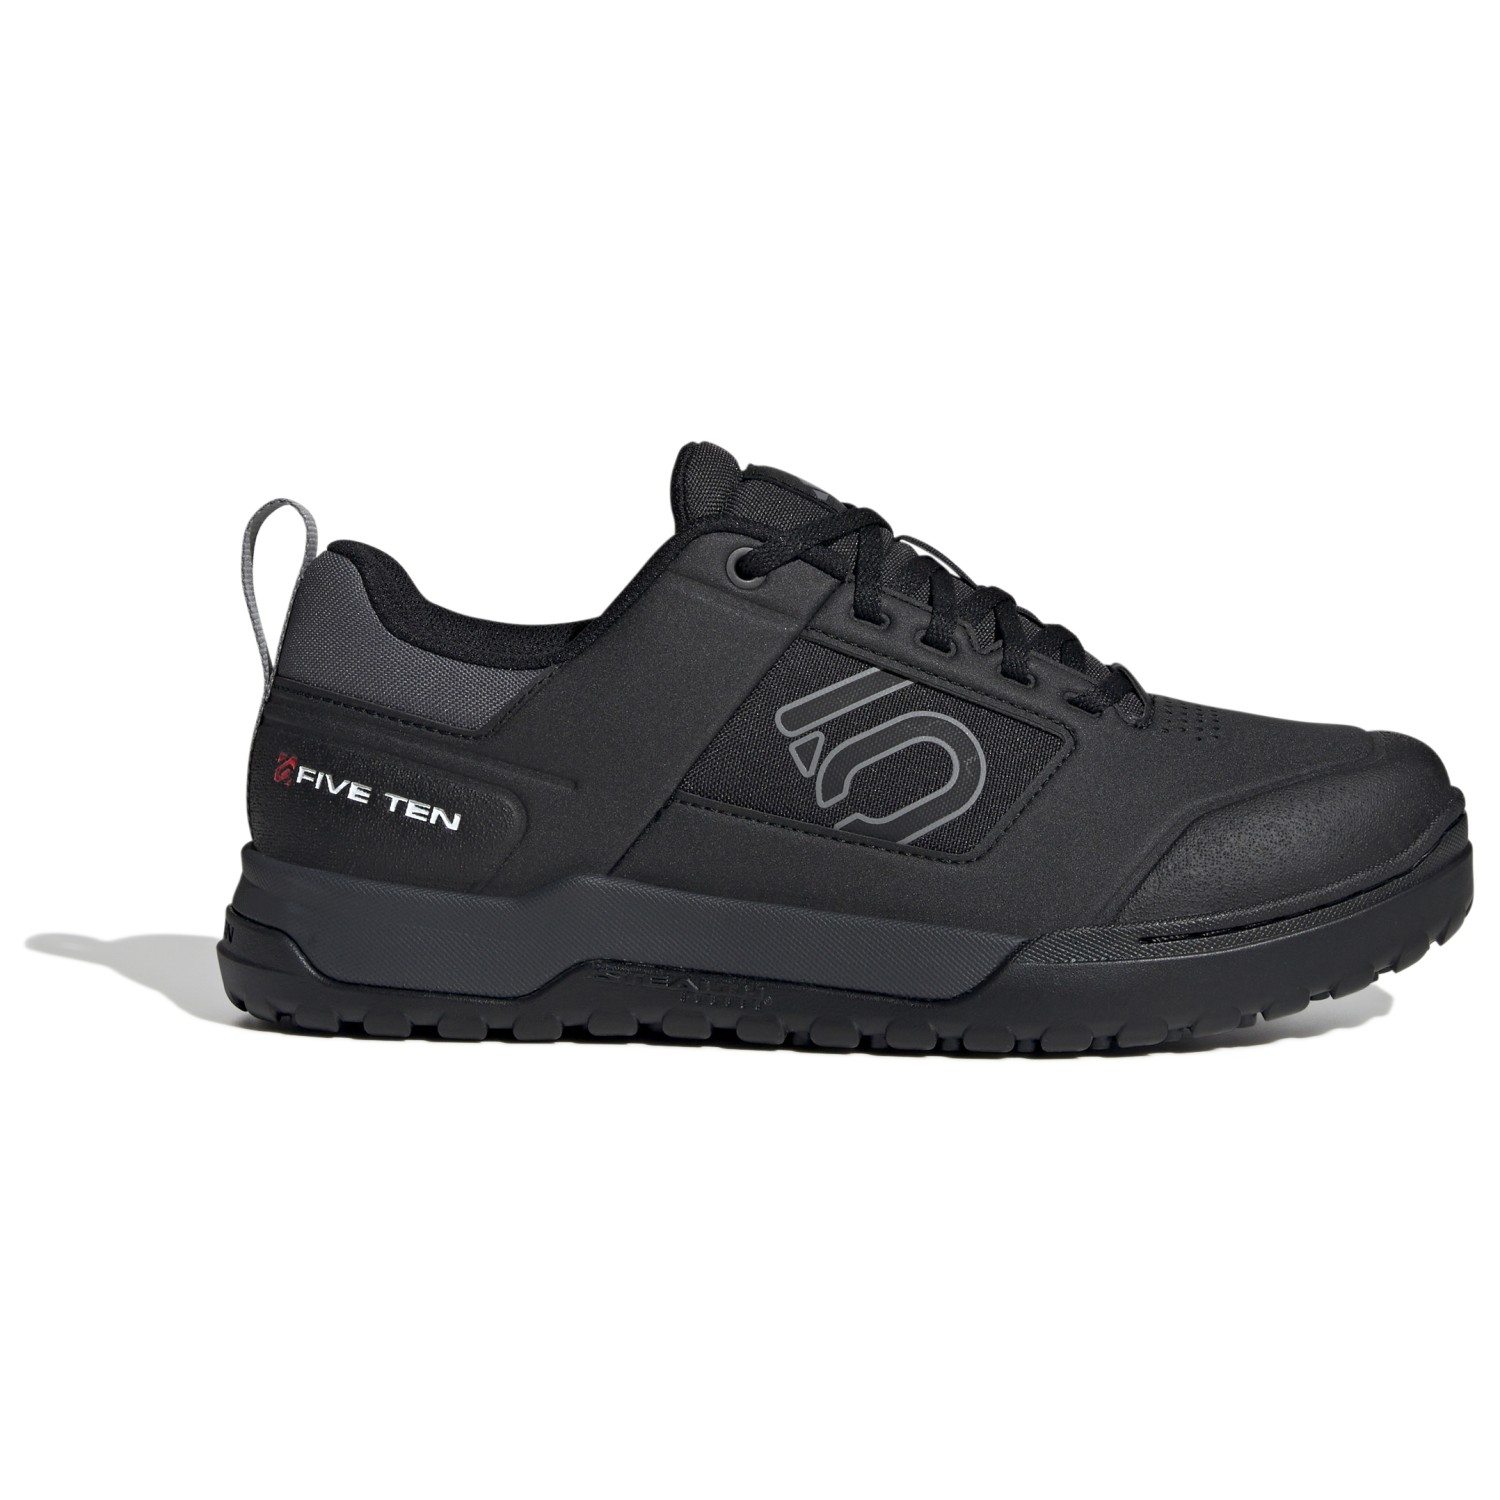 Велосипедная обувь Five Ten Impact Pro, цвет Core Black/Grey Three/Grey Six